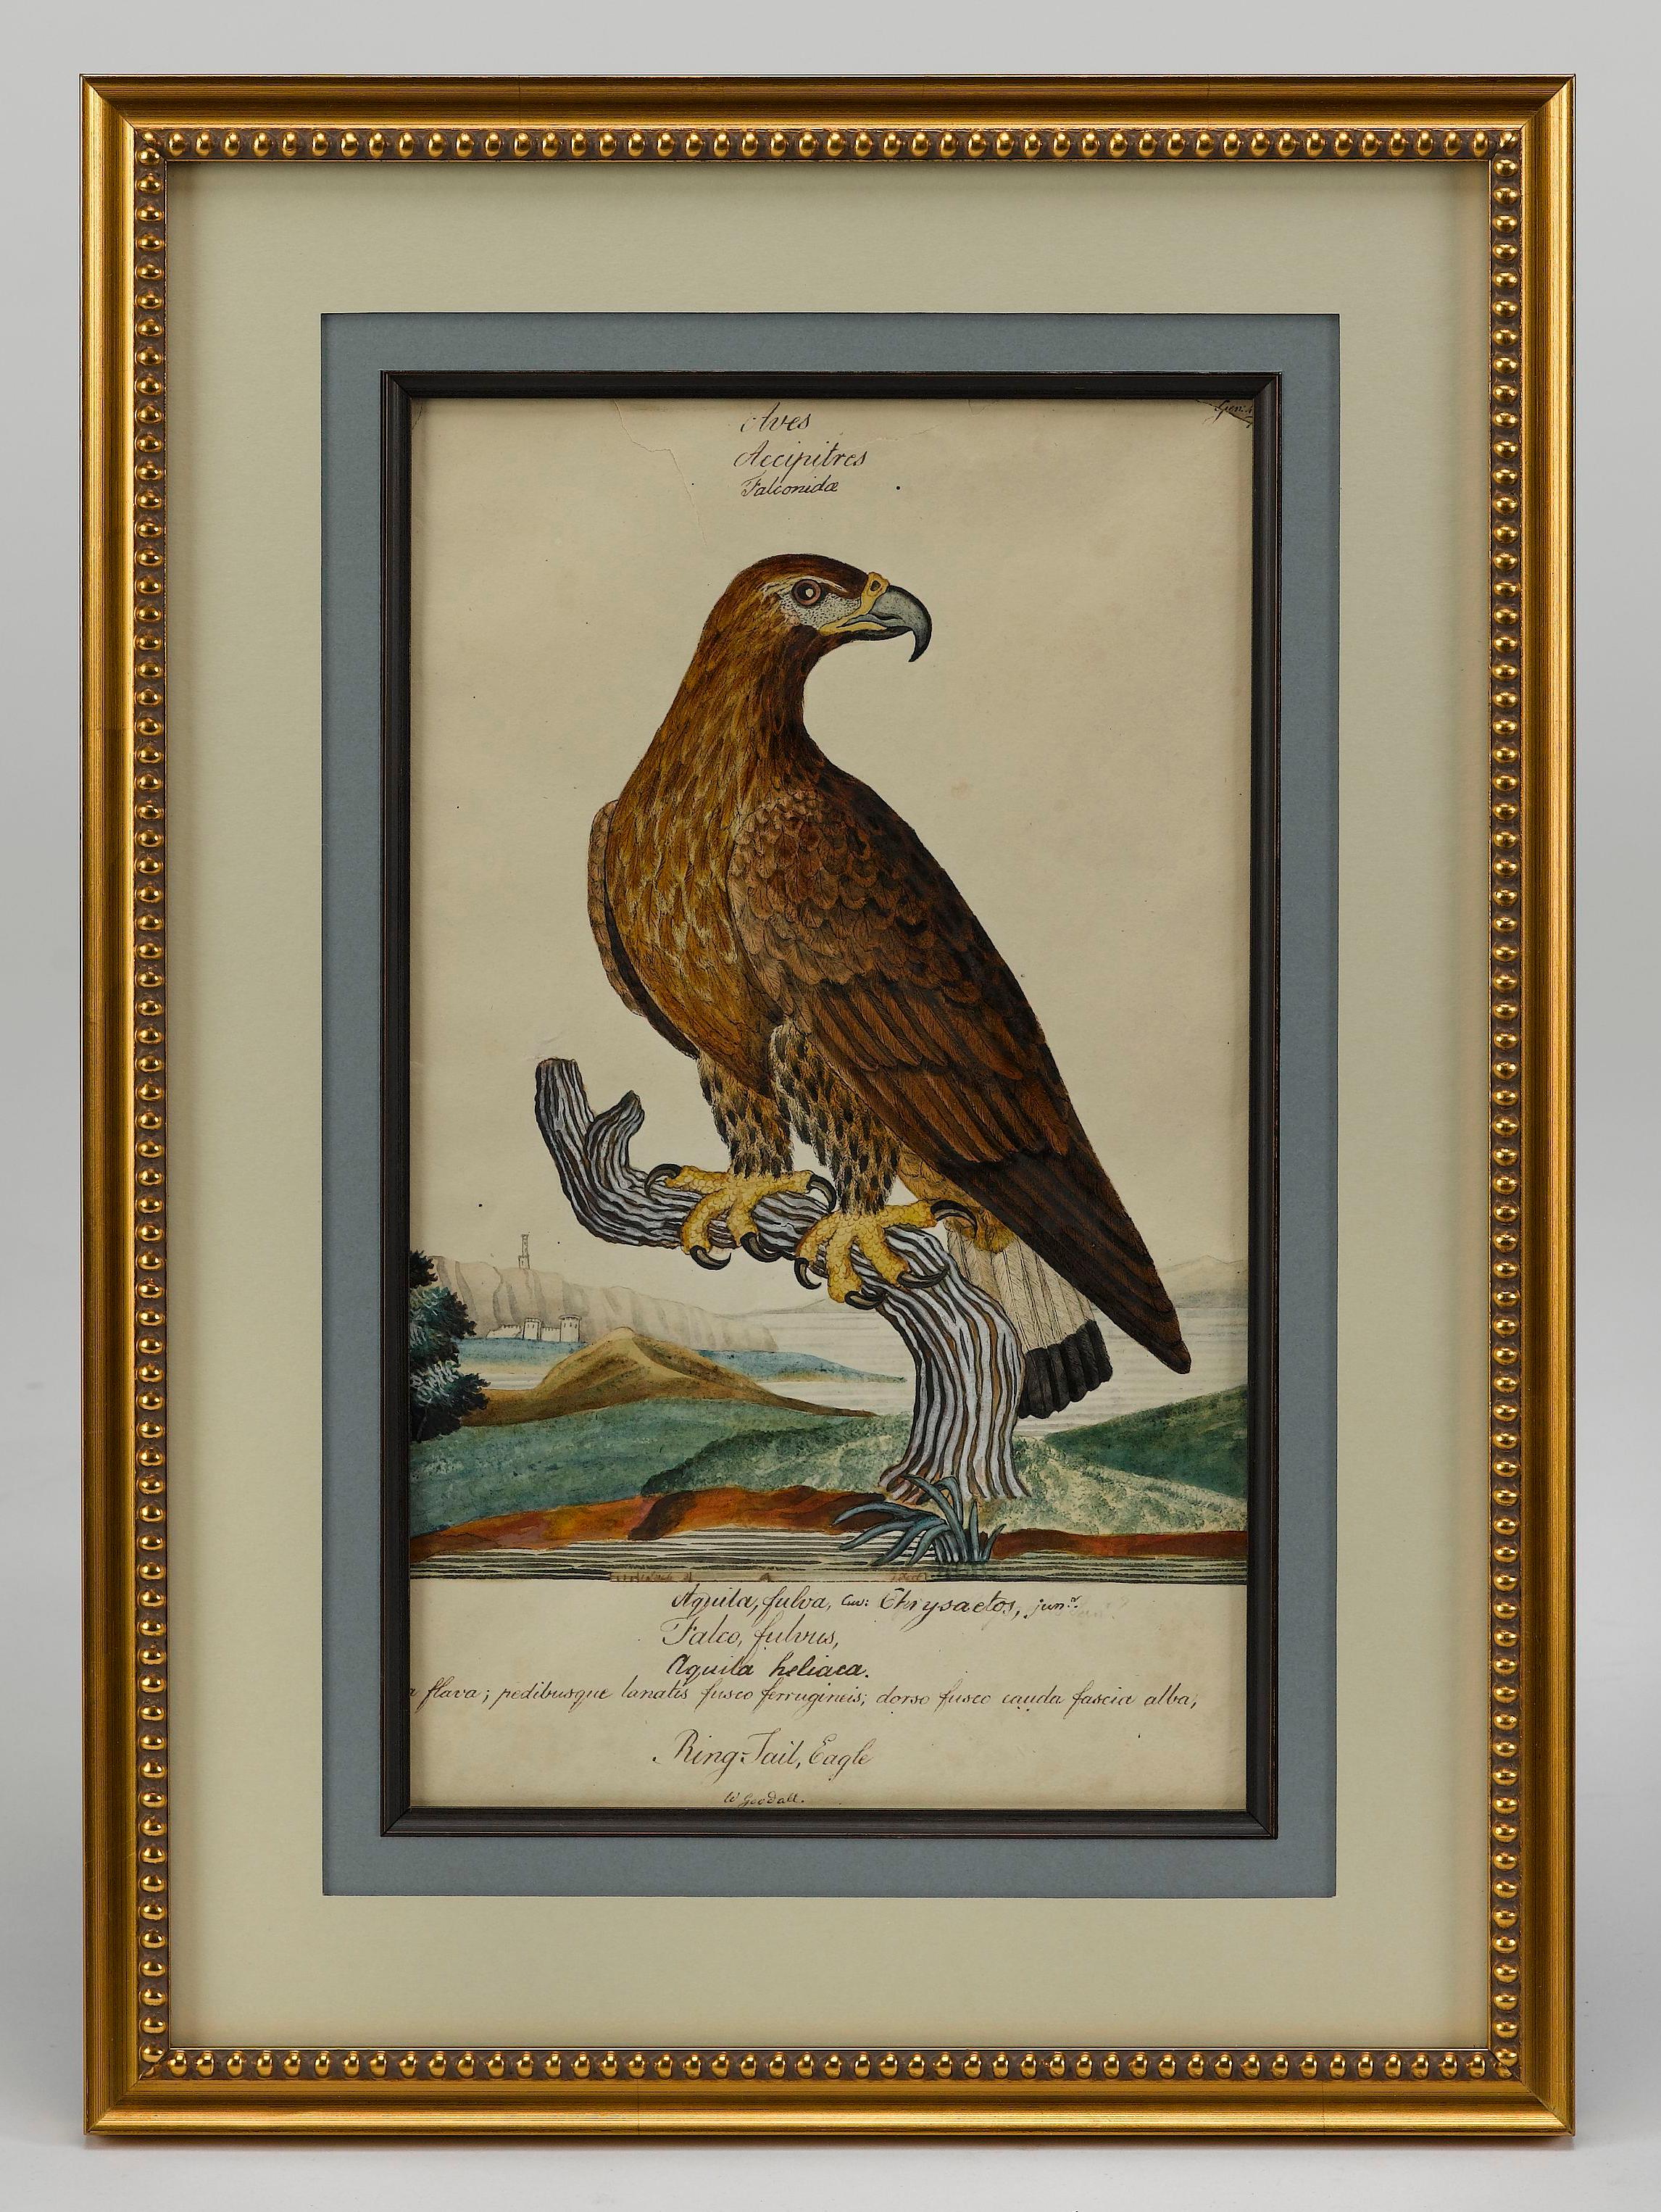 Voici une superbe peinture originale d'un aigle à queue annulaire, réalisée par l'artiste britannique William Goodalls, spécialiste de l'histoire naturelle. Combinaison magnifique et colorée d'aquarelle et d'encre, cette peinture est rendue dans un